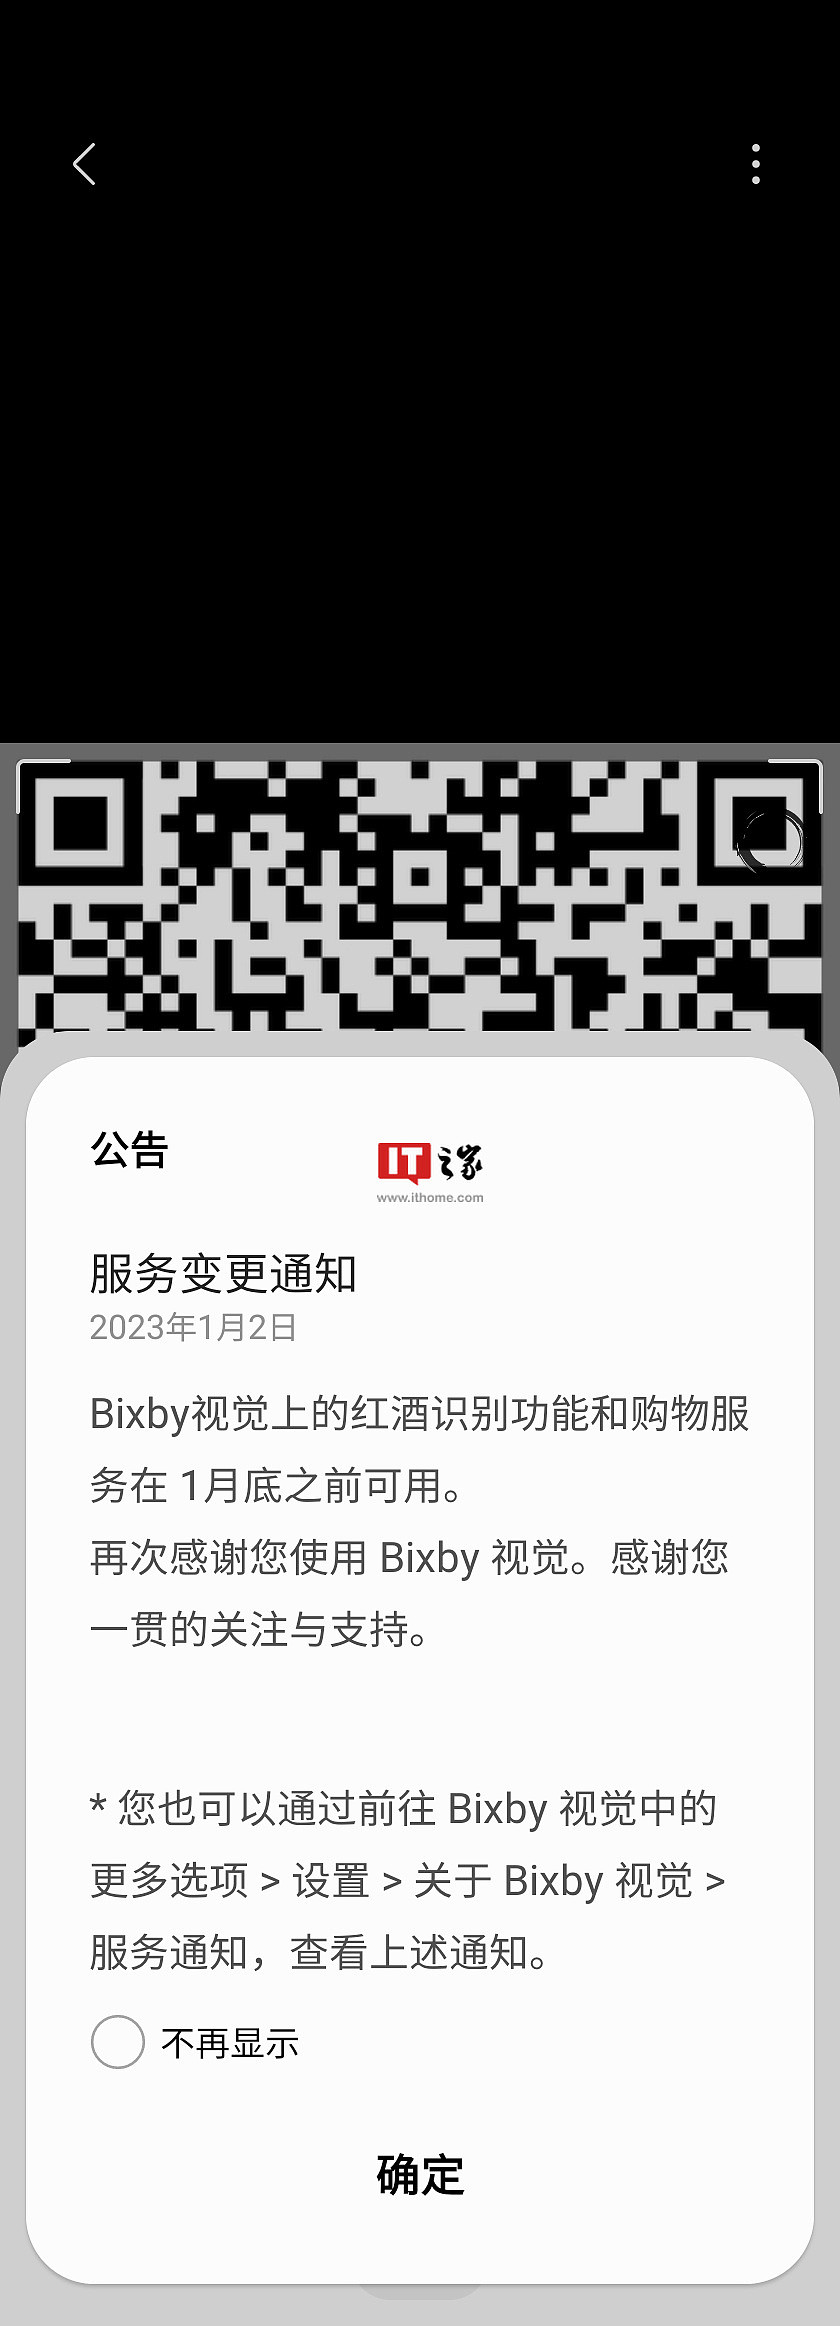 三星手机 Bixby 视觉的红酒识别和购物服务 2 月起停用 - 1